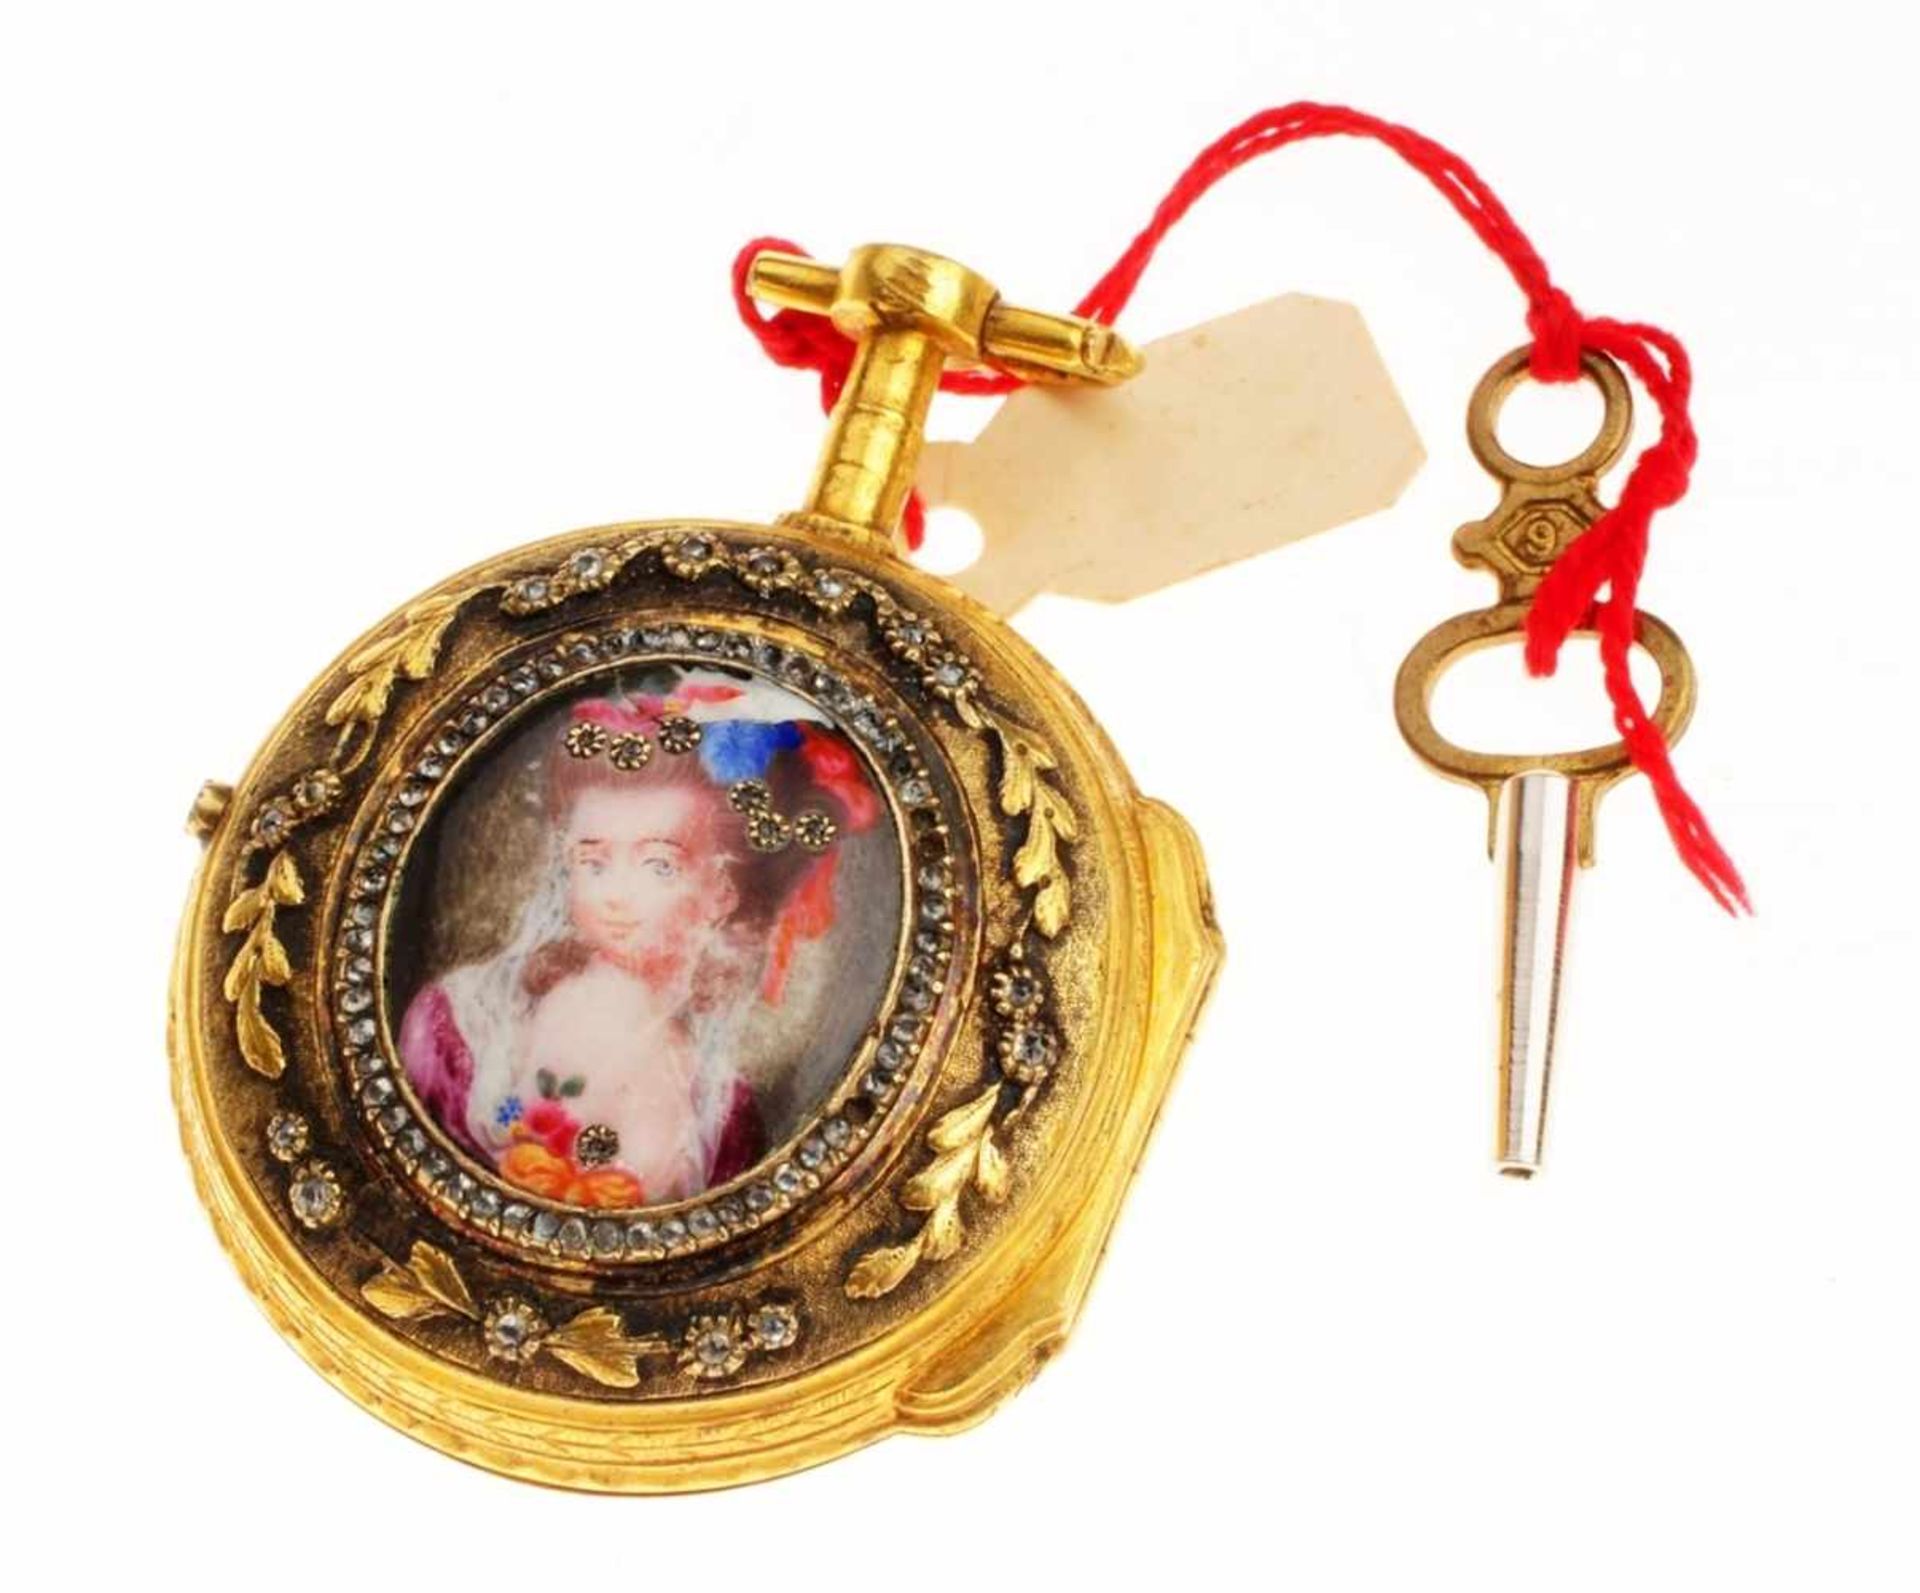 Französische Damen-Taschenuhr mit MiniaturmalereiVergoldetes Gehäuse. Rücks. in floral - Bild 2 aus 2